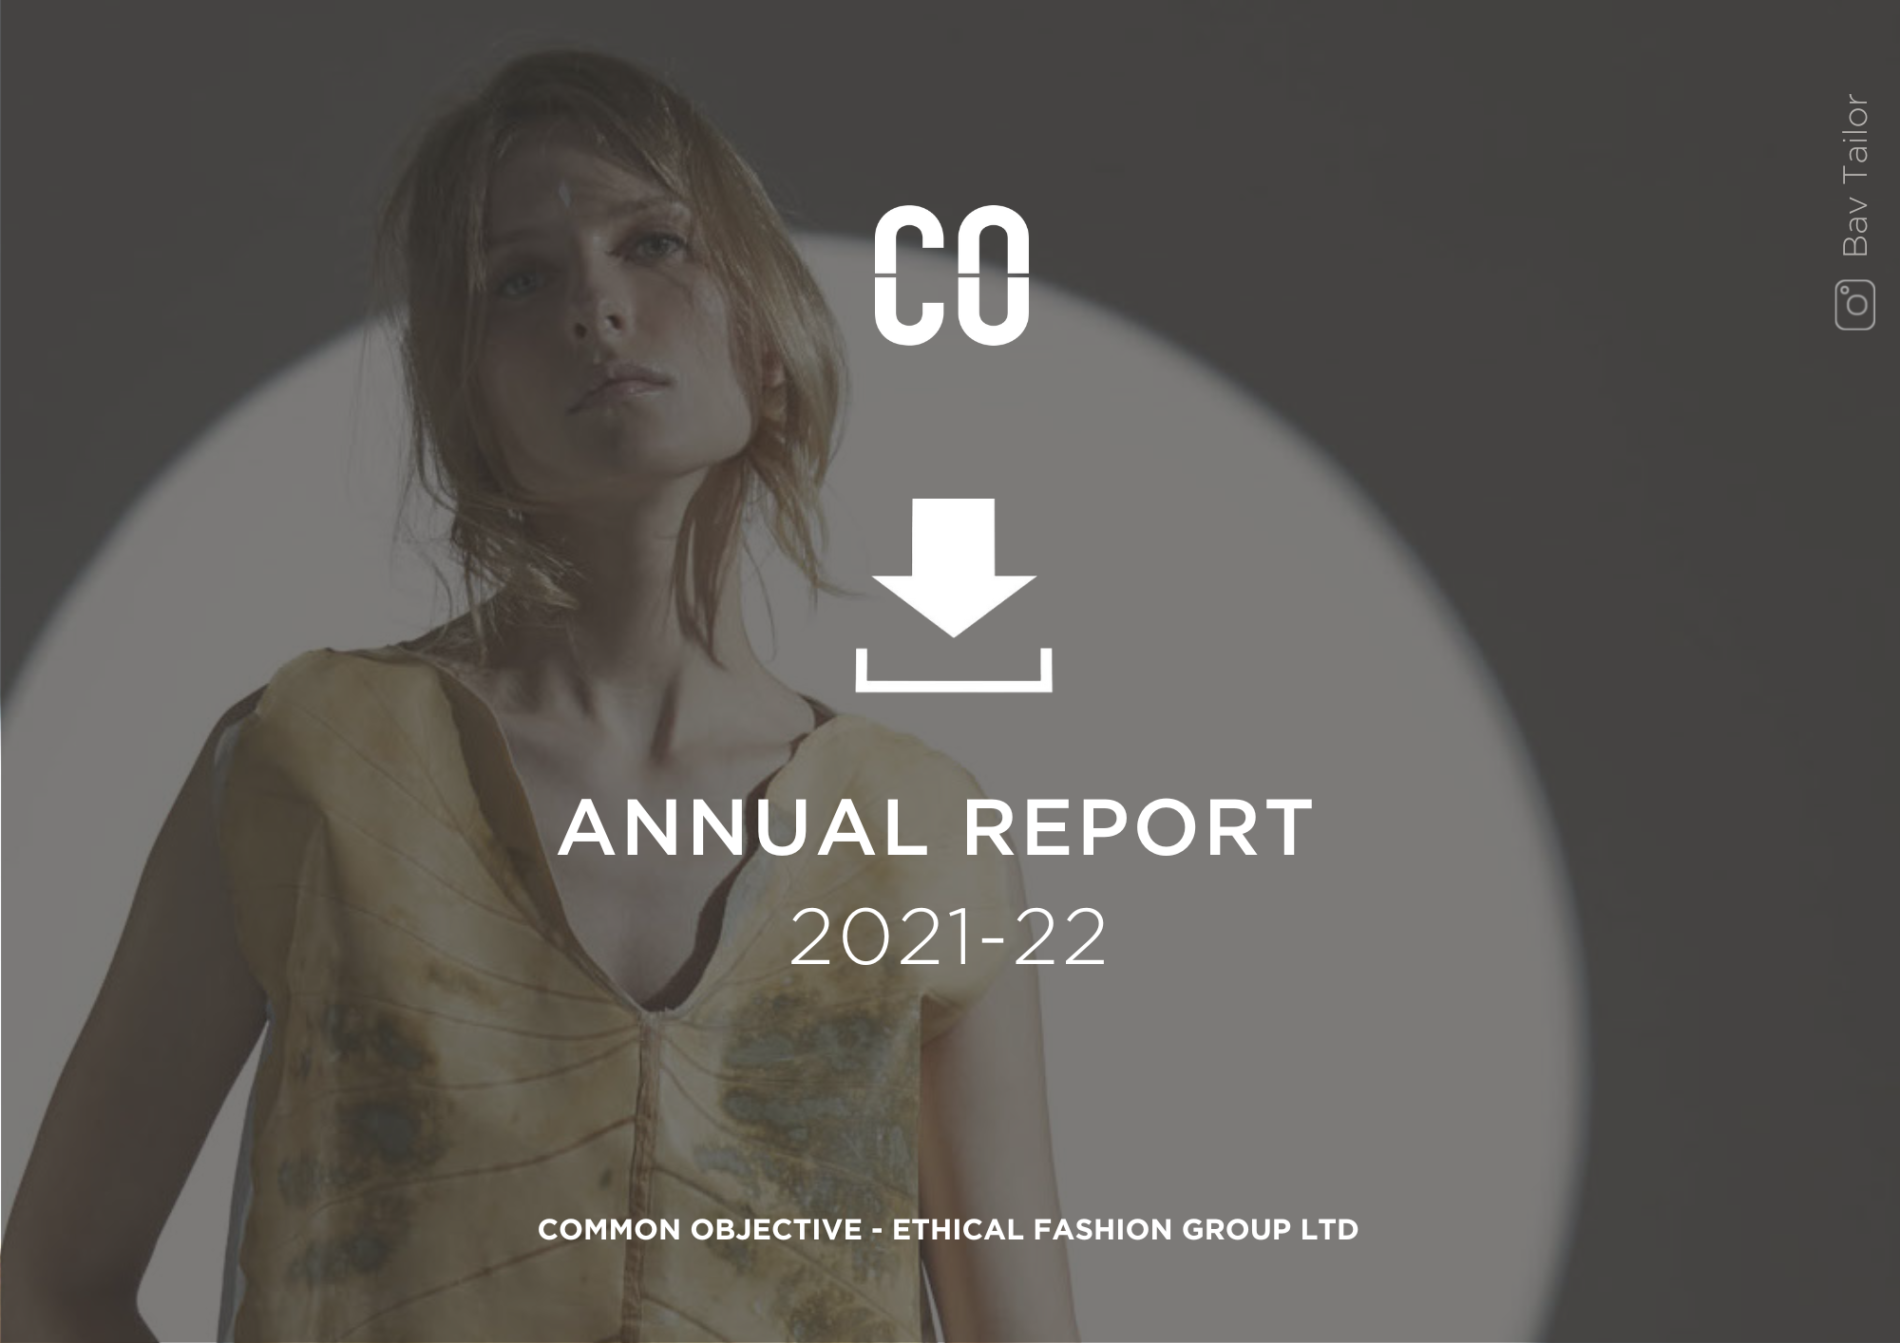 CO Annual Report 2021-22